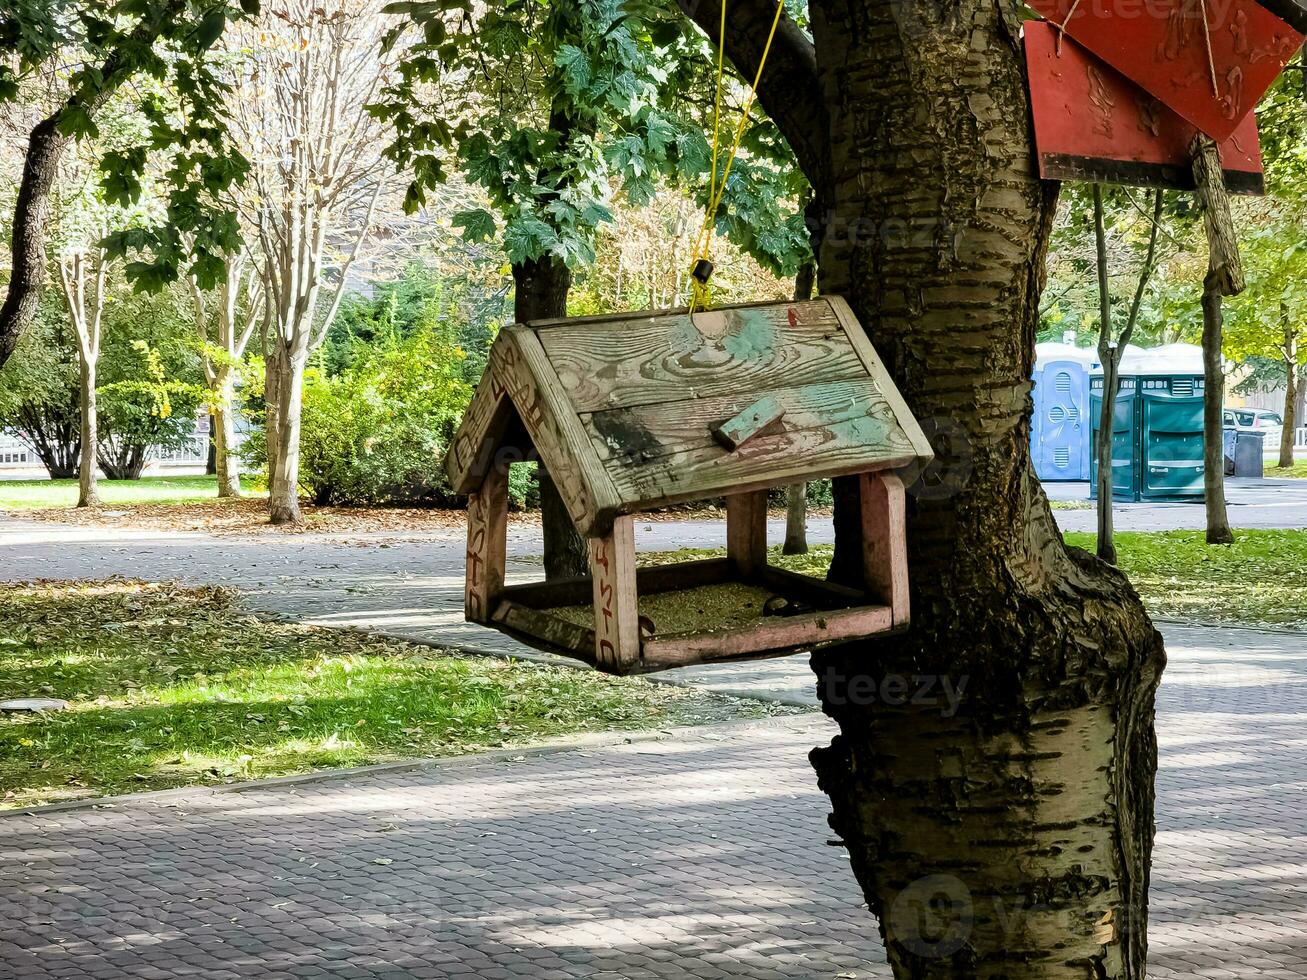 alimentadores para pássaros dentro a cidade parque. conceito do ajudando animais. foto